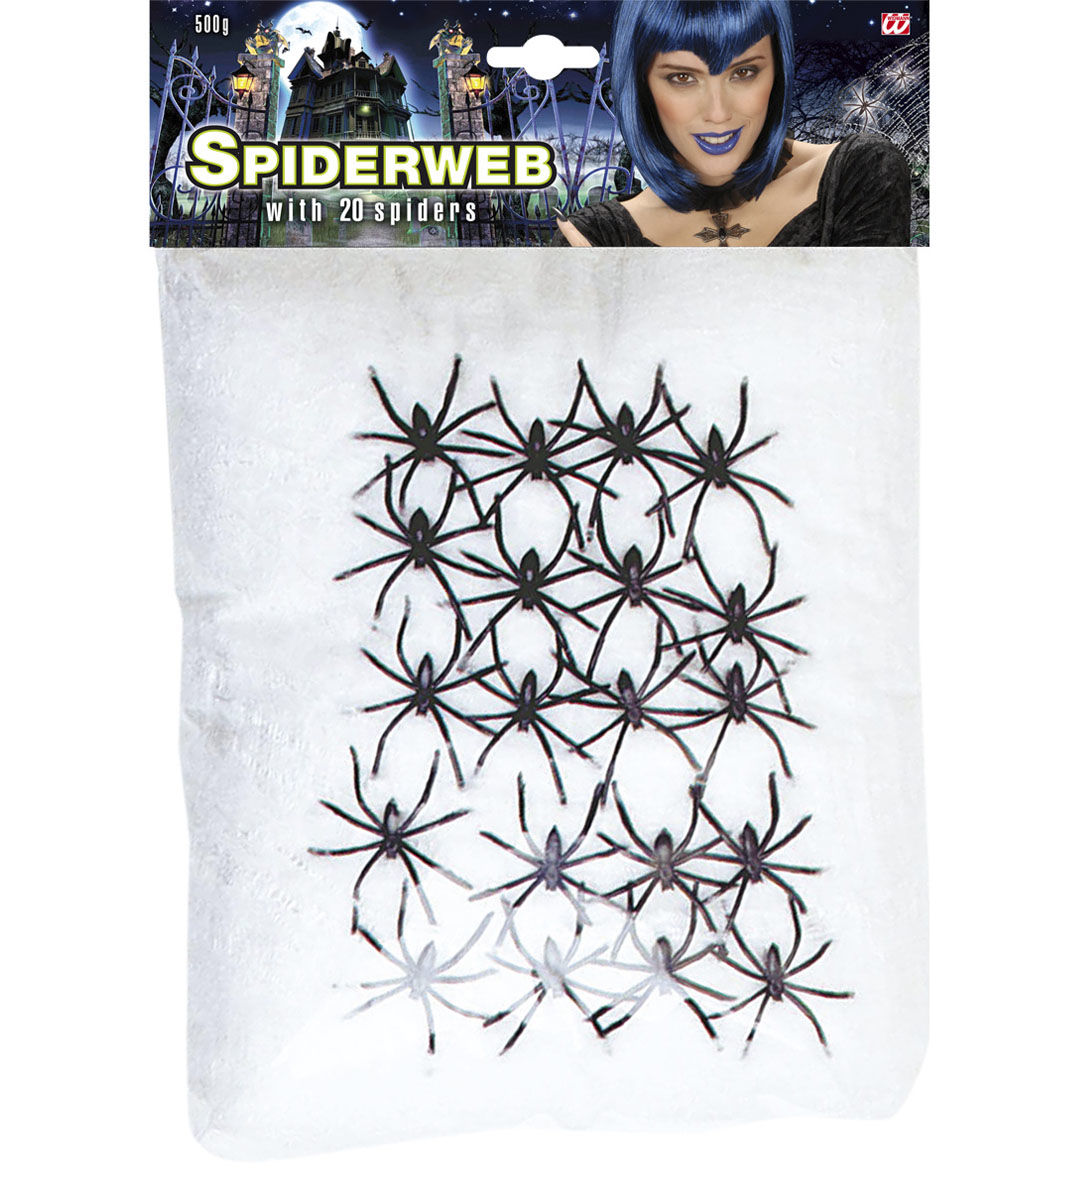 Velká pavučina s 20 pavouky (500g)